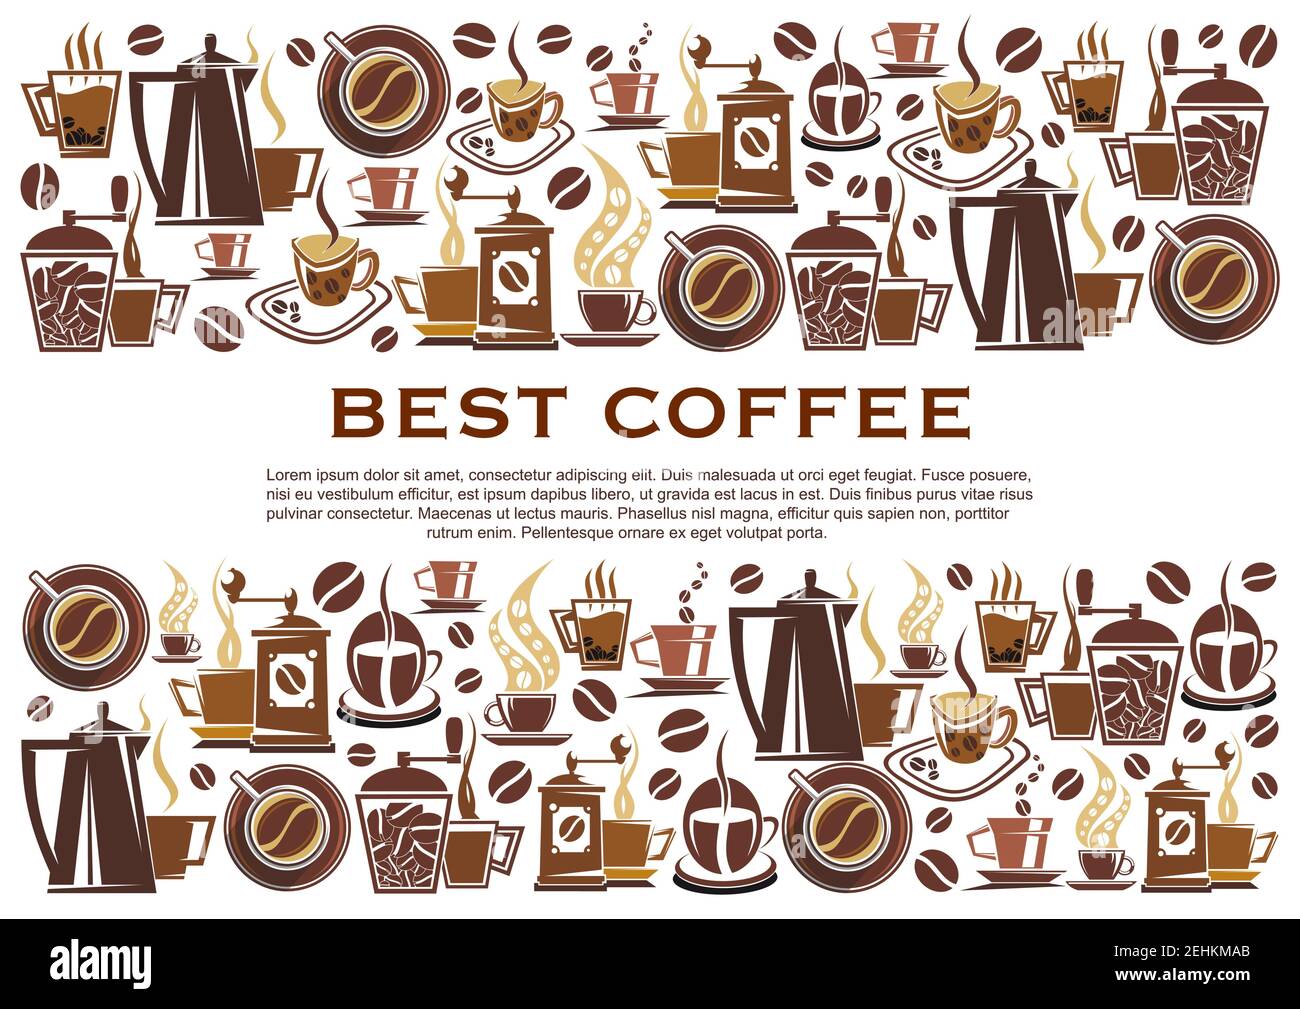 Il miglior poster per caffè o caffetteria. Design vettoriale di macchine da caffè, tazze e chicchi per espresso, americano o cappuccino e cioccolata calda Illustrazione Vettoriale